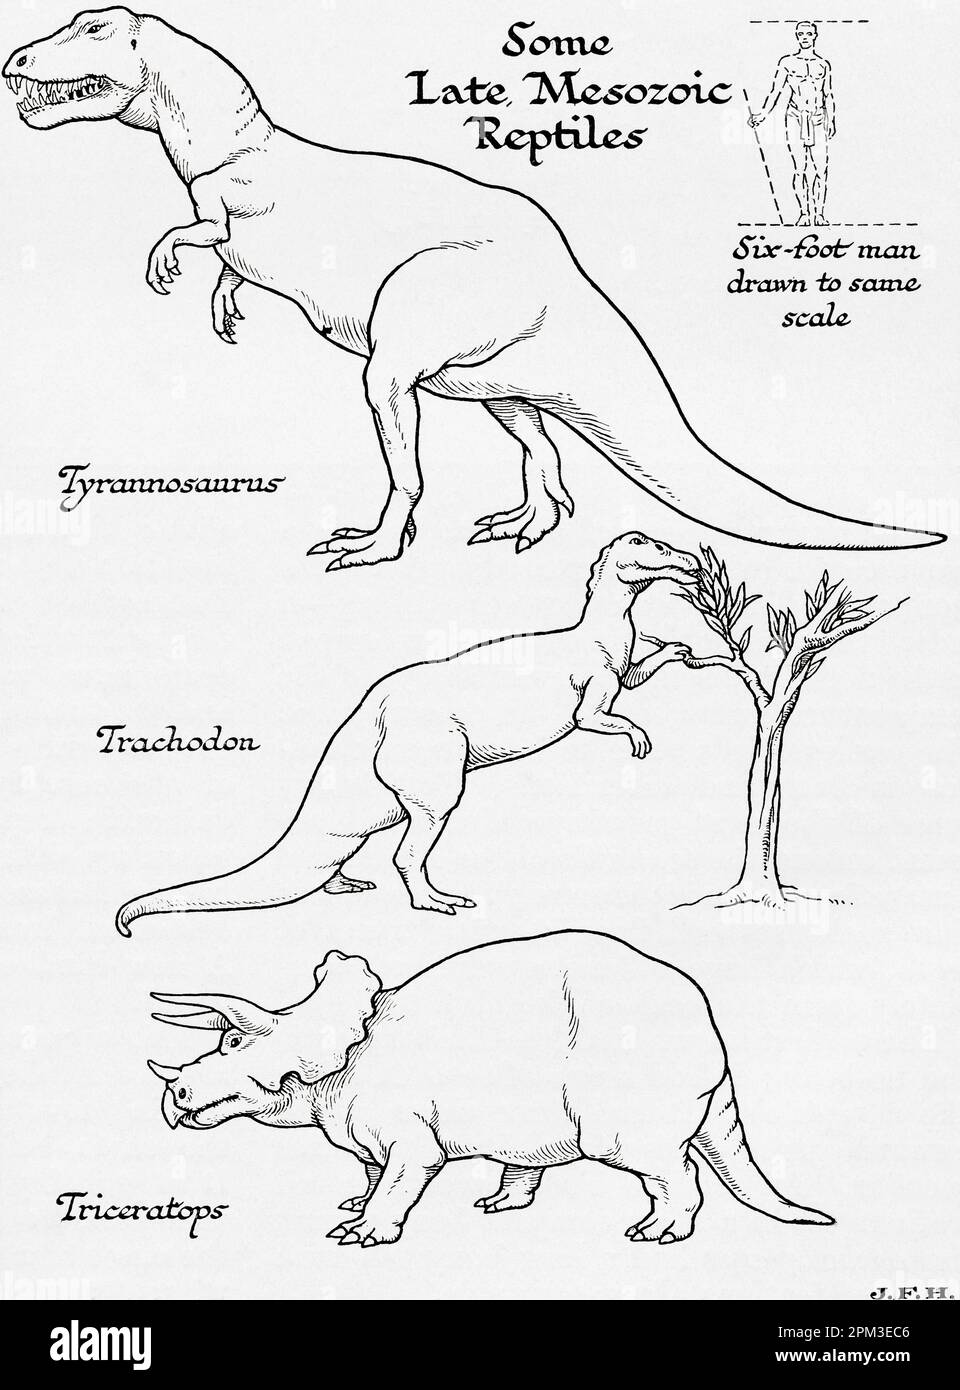 Rettili di epoca mesozoica tardiva. Tyrannosaurus, Trachodon e Triceraptops. Mostrato nel diagramma un uomo di sei piedi disegnato sulla stessa scala di altre figure. Dal libro Outline of History di H.G. Wells, pubblicato nel 1920. Foto Stock